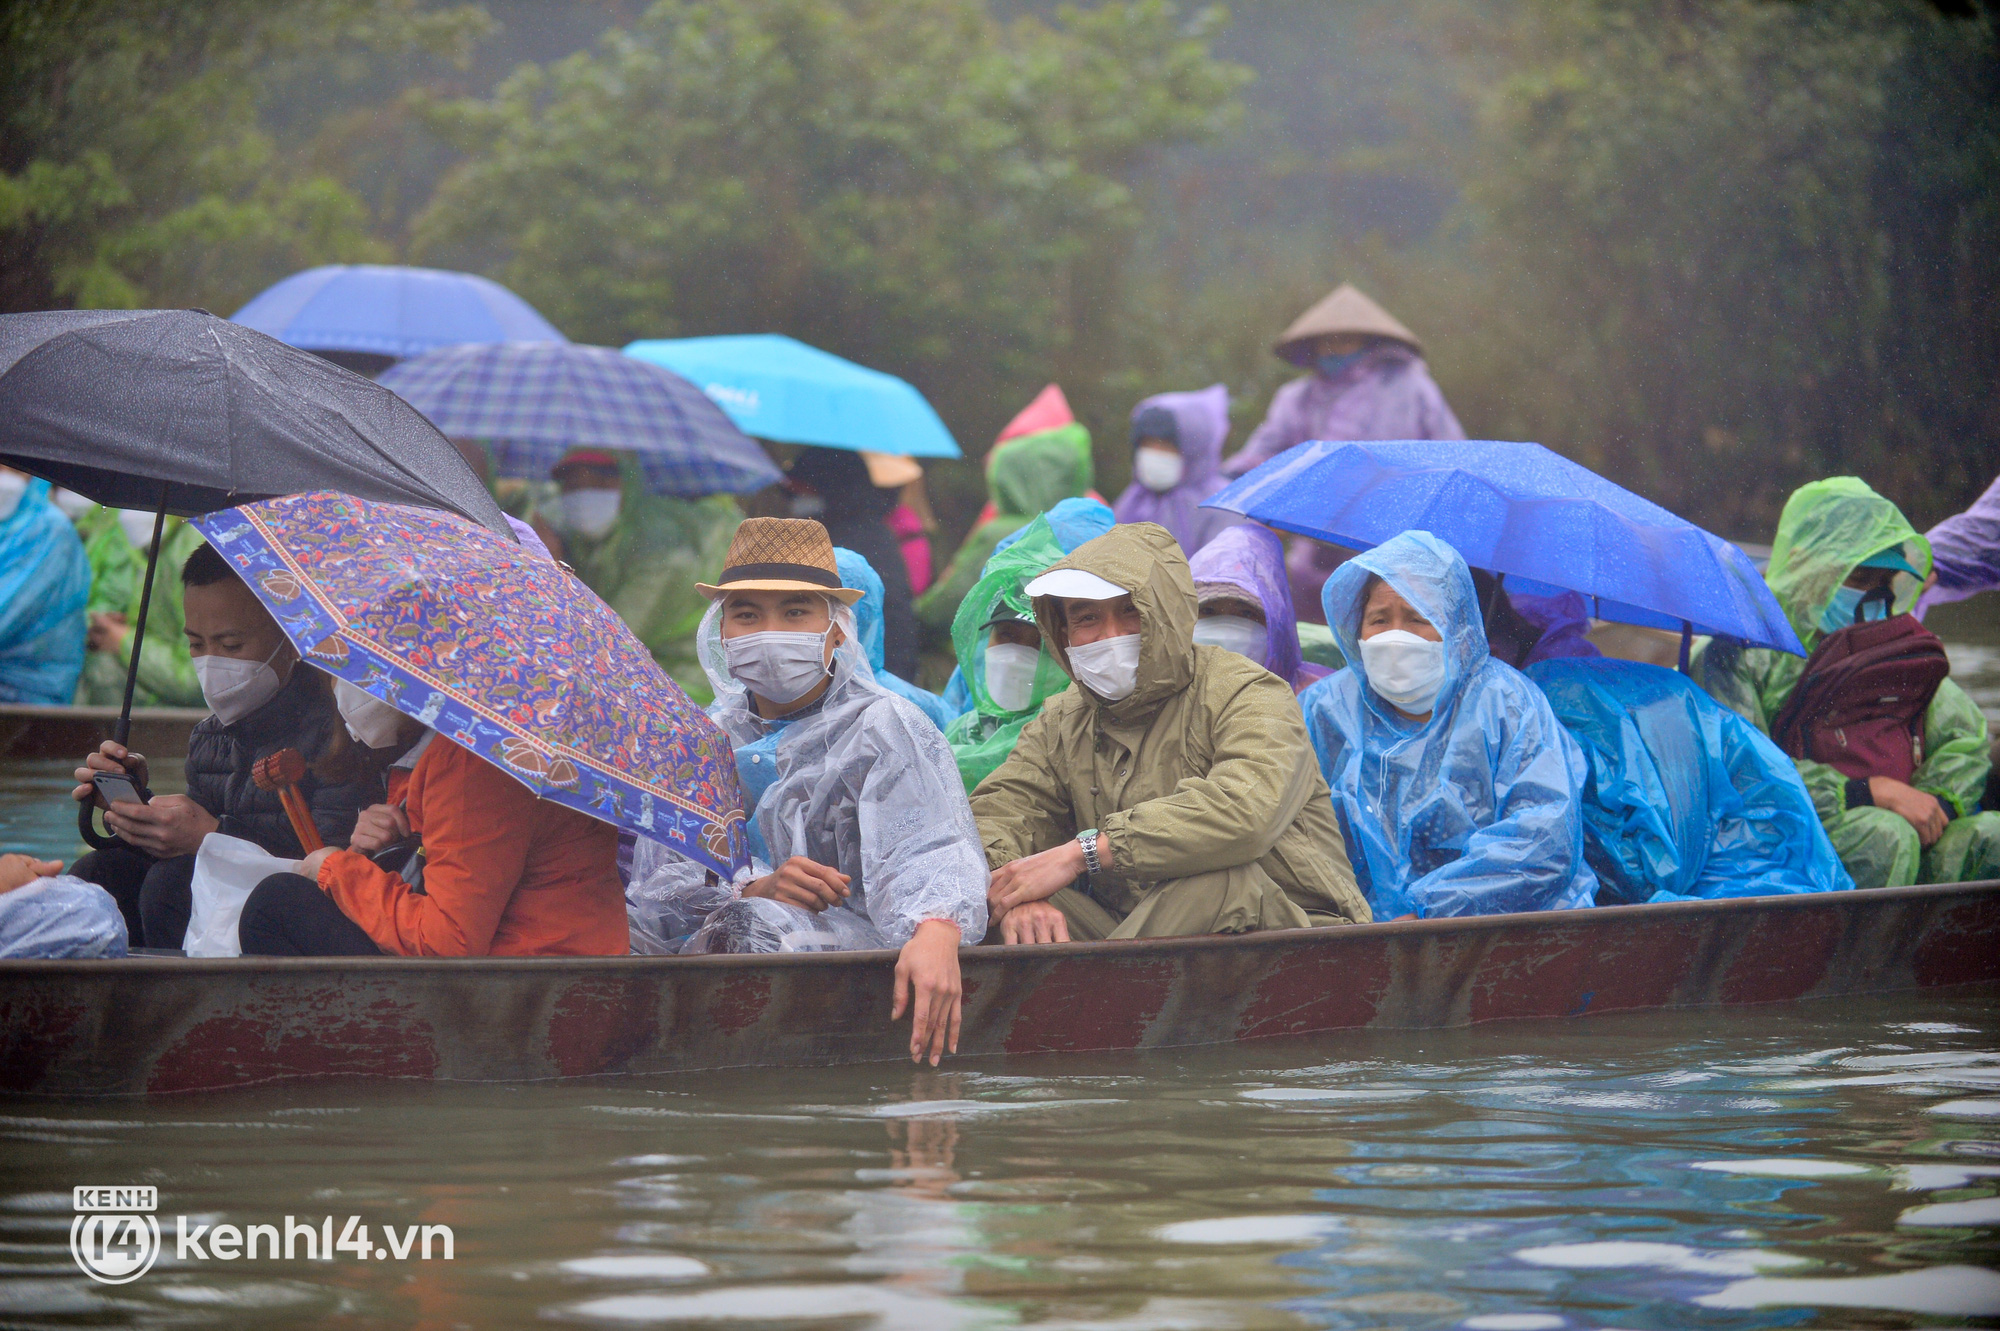 Ảnh: Người dân mặc áo mưa co rúm trên thuyền, trẻ em mệt mỏi theo cha mẹ đi lễ chùa Hương trong giá rét - Ảnh 4.